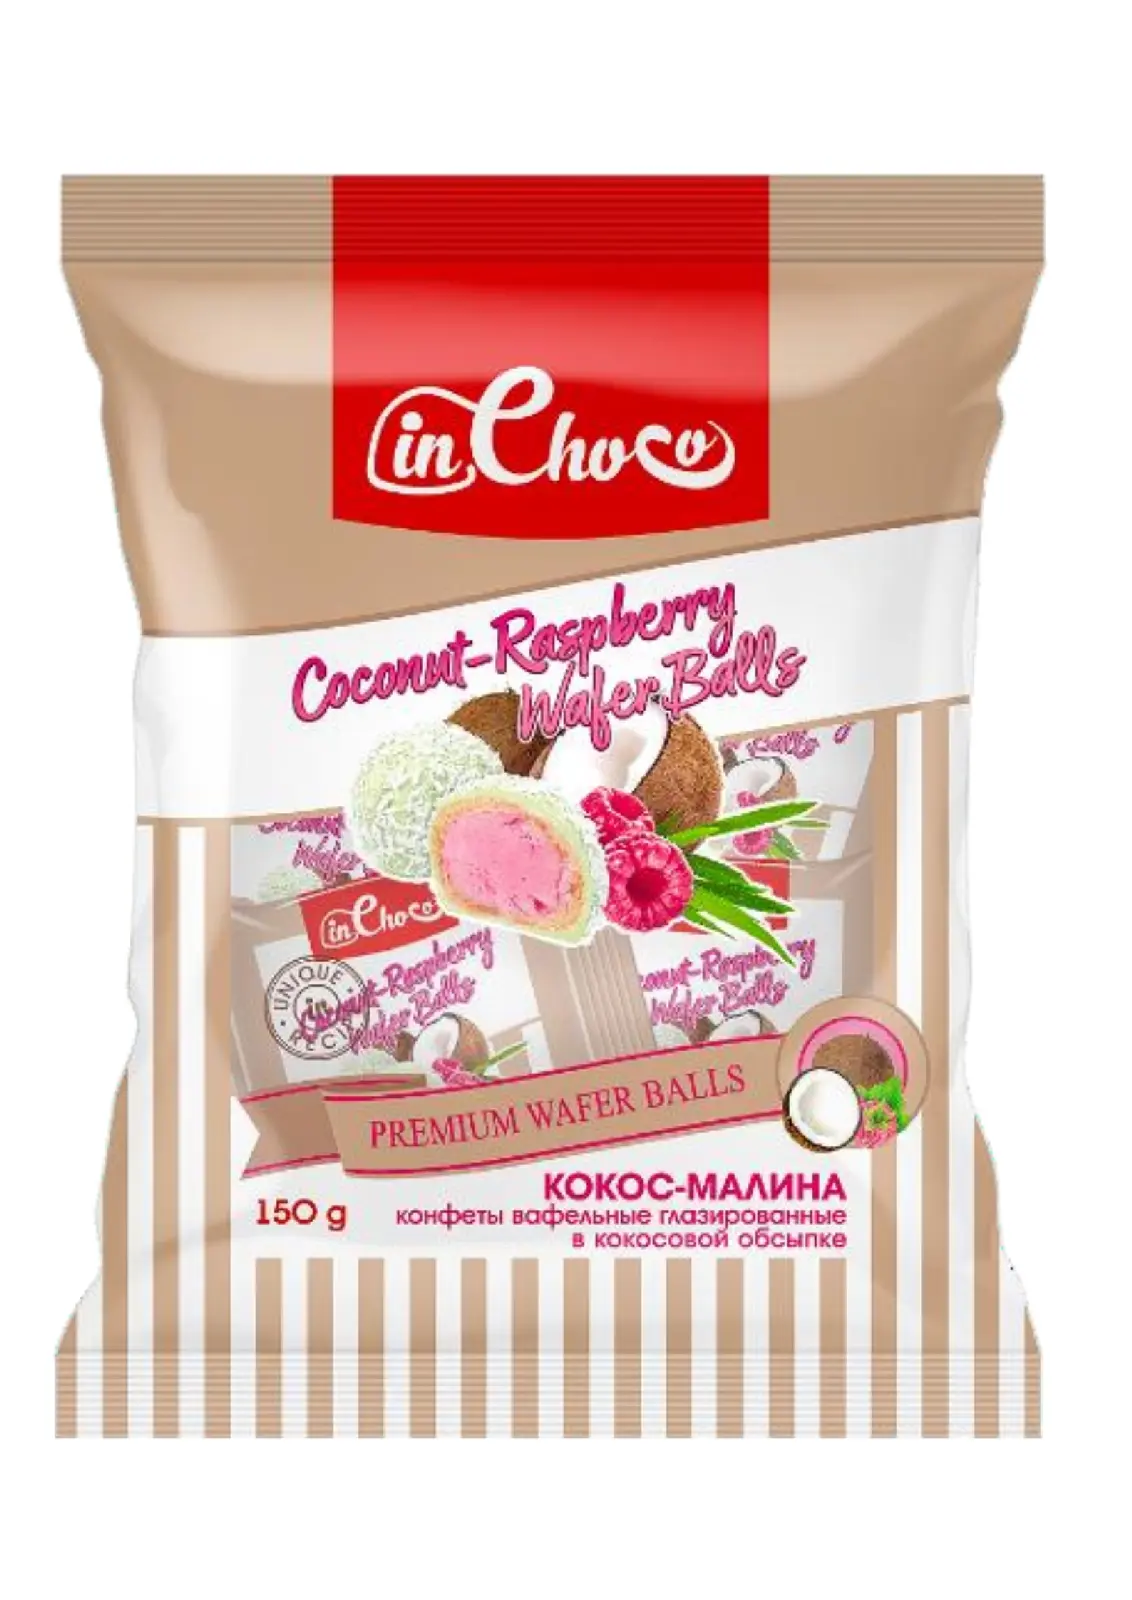 Конфеты вафельные глазированные с малиновым вкусом в кокосовой обсыпке Ин Чоко, 0.15 кг.